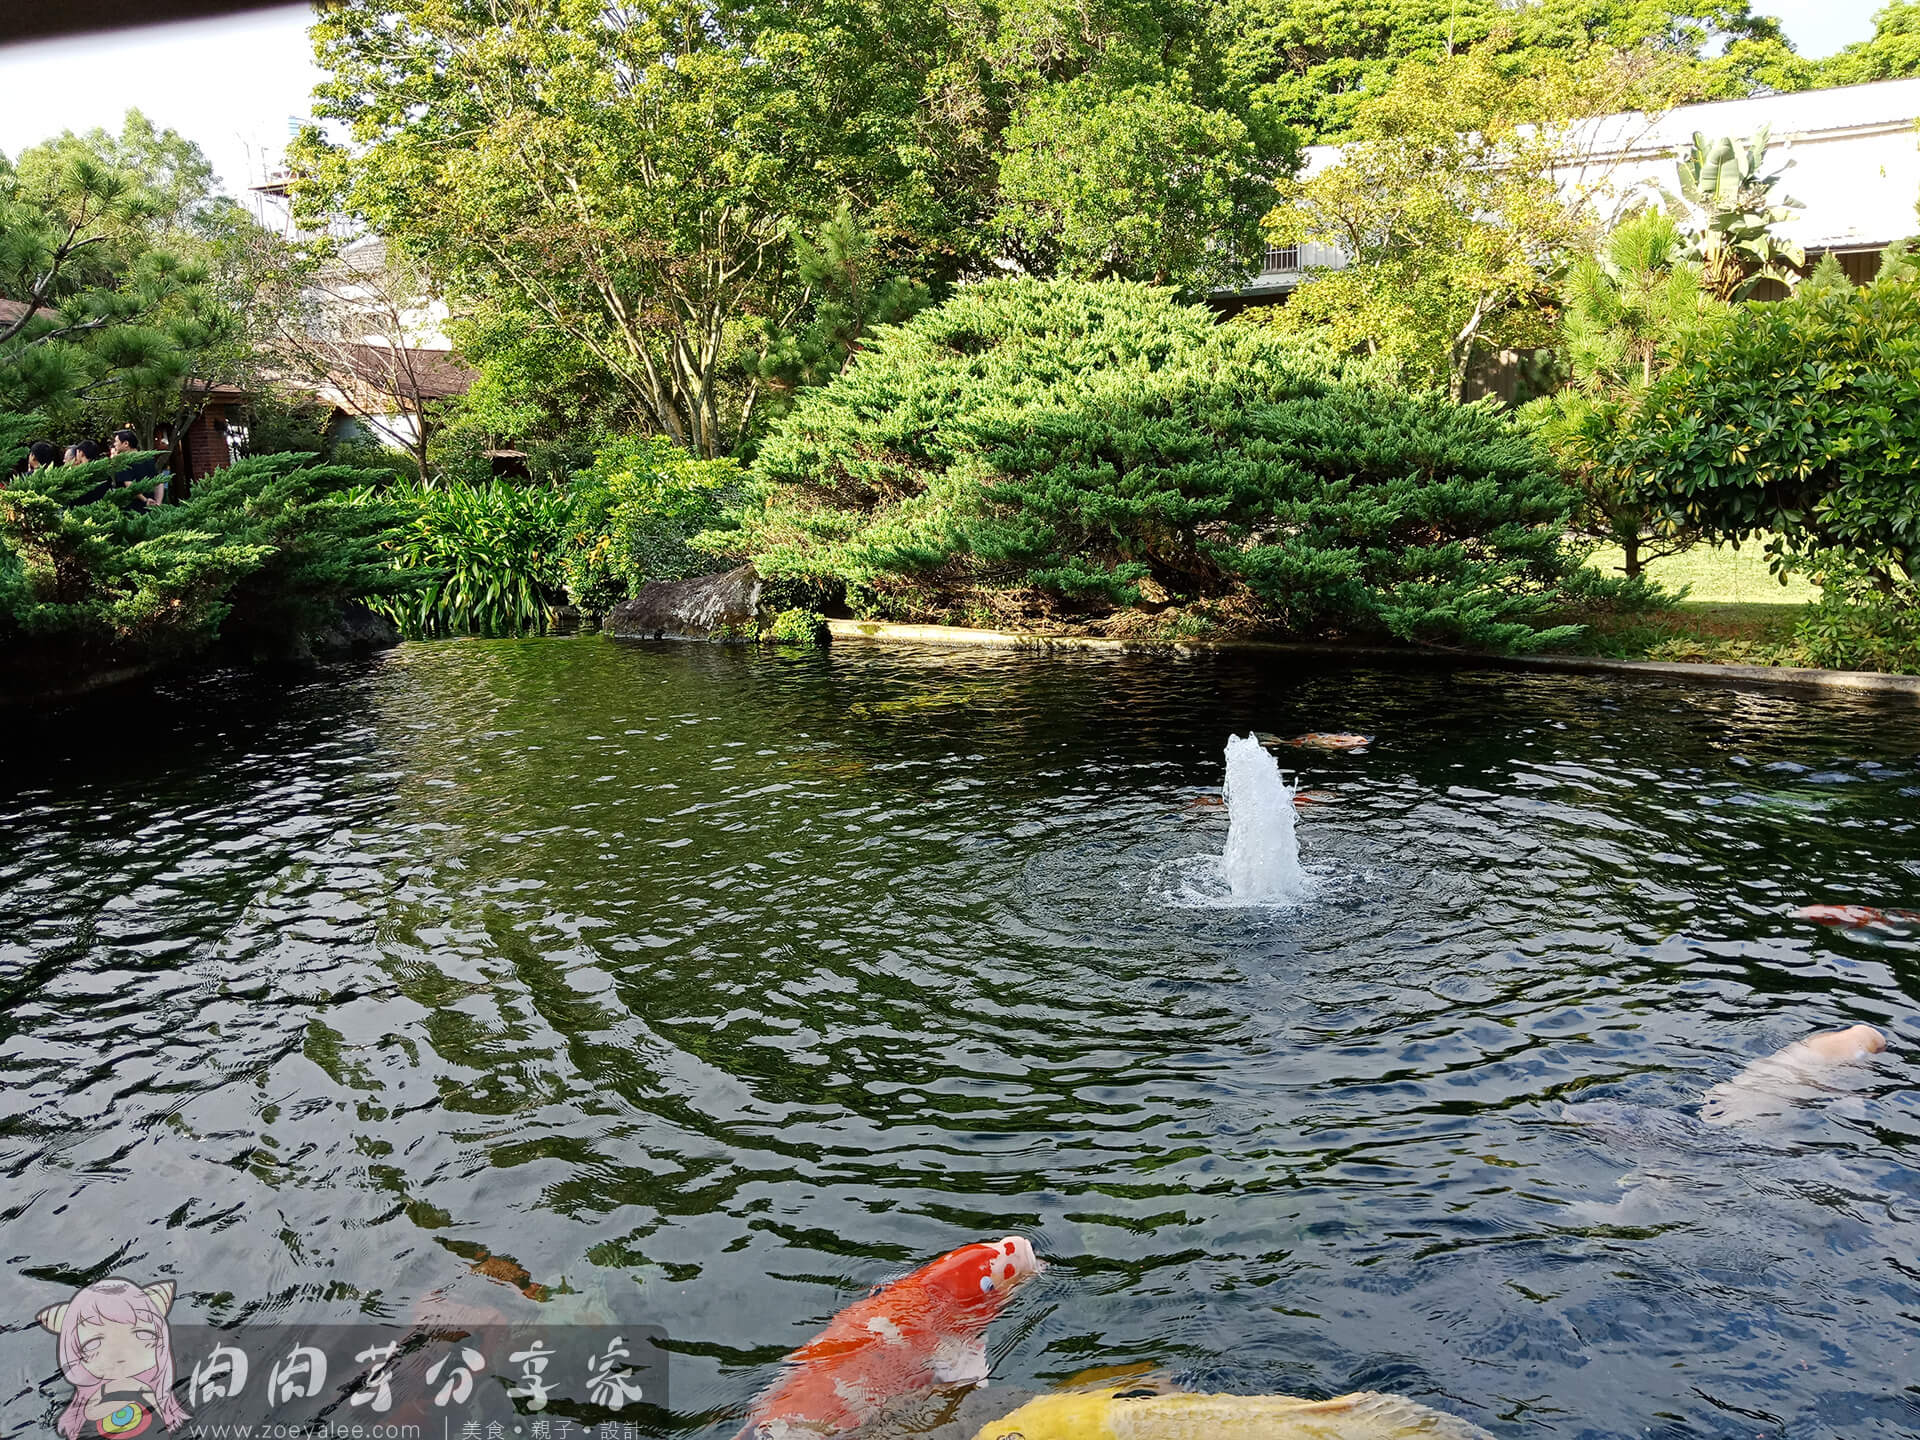 壹等賞景觀茶園餐廳錦鯉池有活水裝置